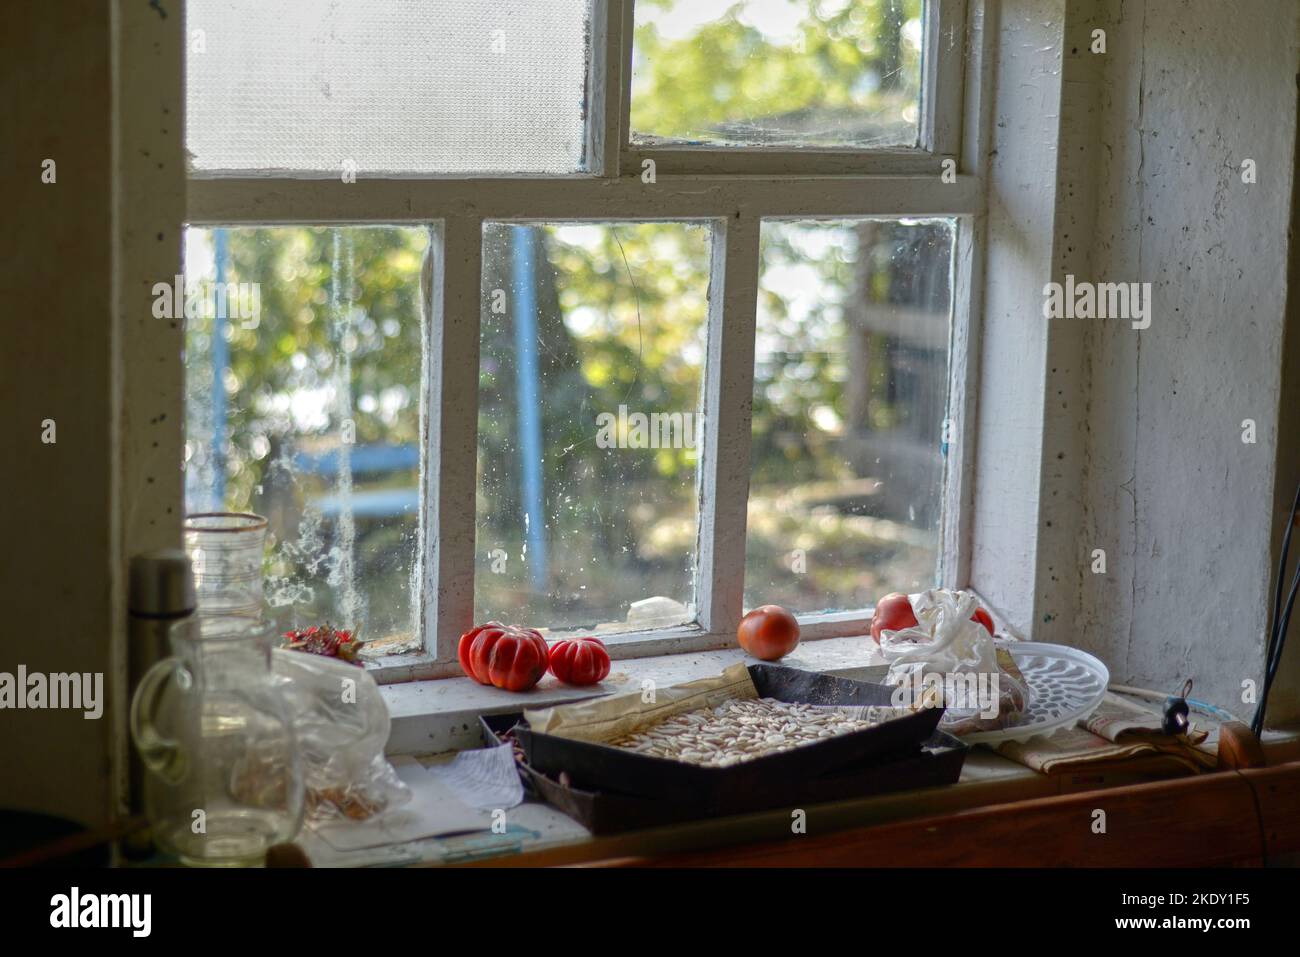 Vecchio davanzale con pomodori e semi di zucca. La finestra macchiata nel villaggio era sporca Foto Stock